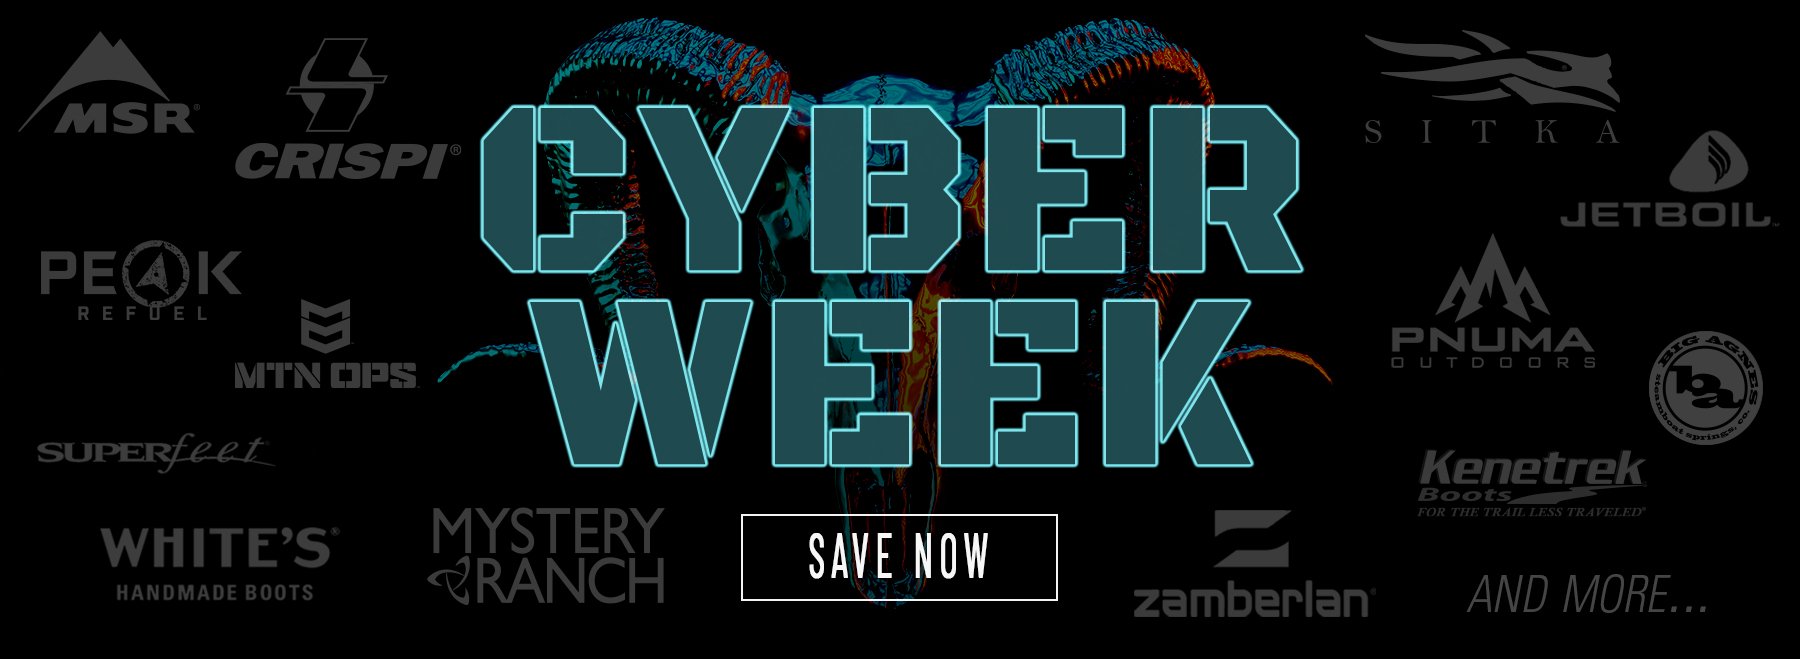 Shop BlackOvis's Cyber Week Sale